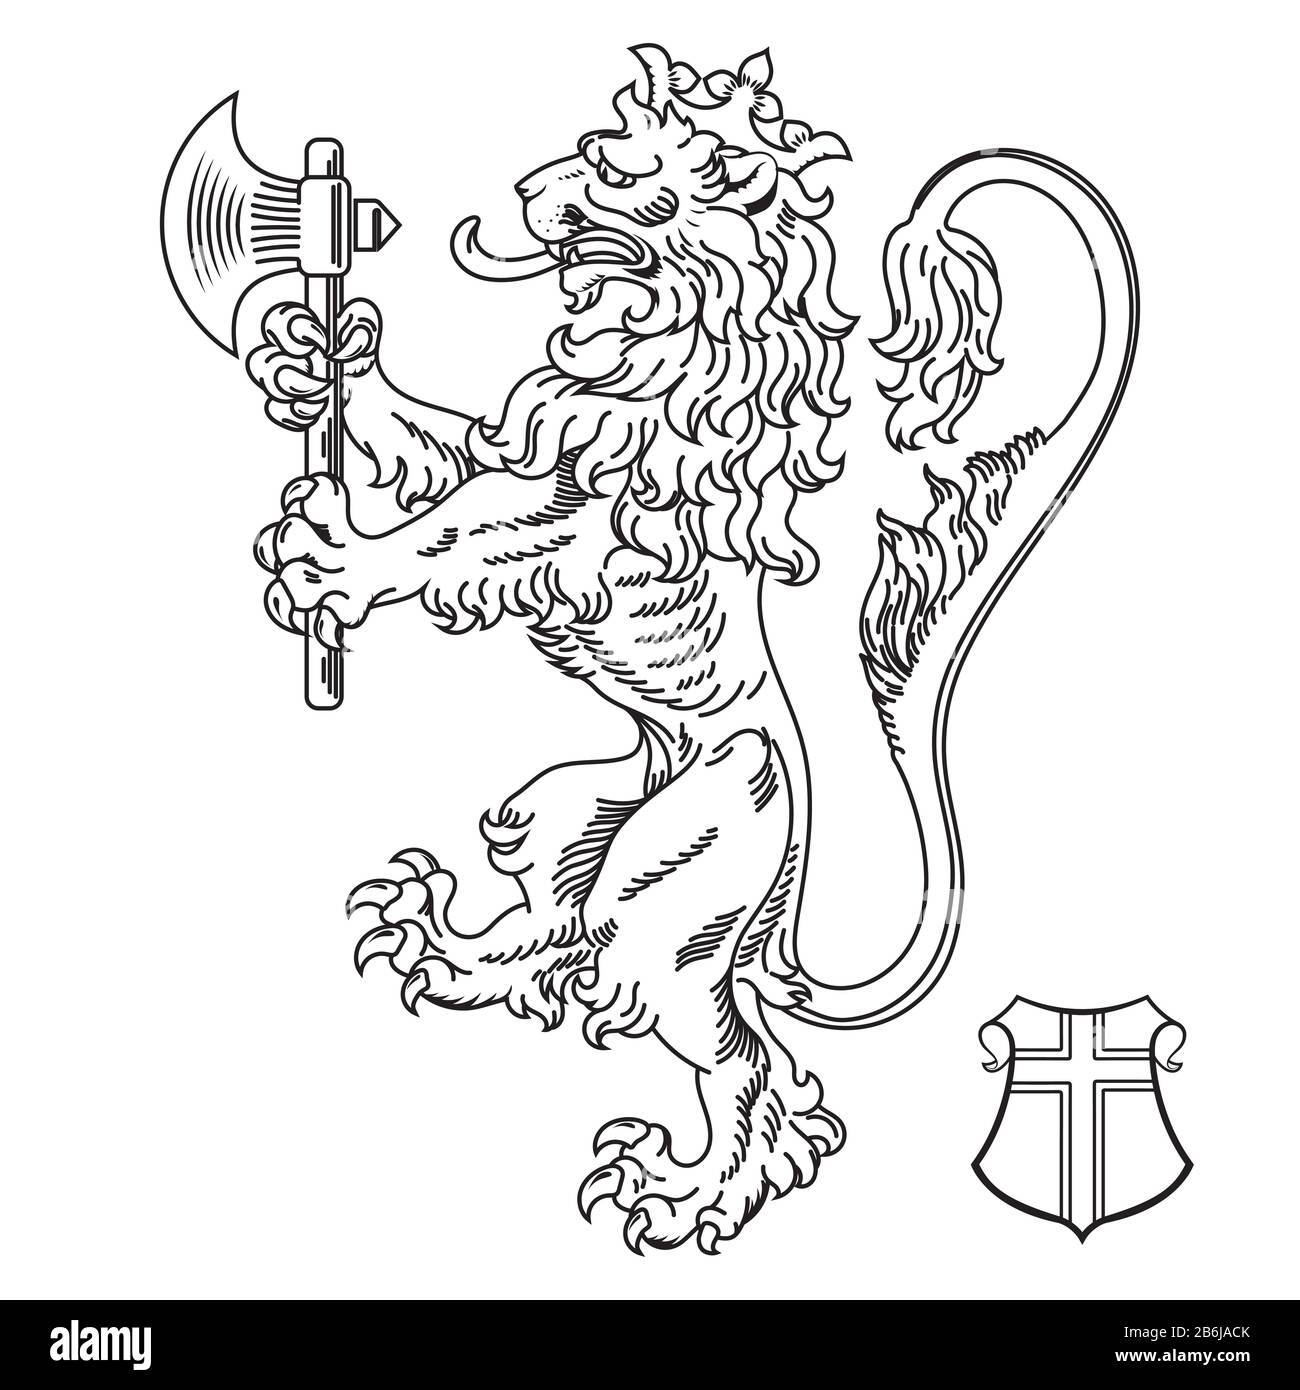 Uno stemma araldico medievale, leone araldico, silhouette di leone araldico, leone coronato che tiene un'ascia nelle zampe anteriori Illustrazione Vettoriale